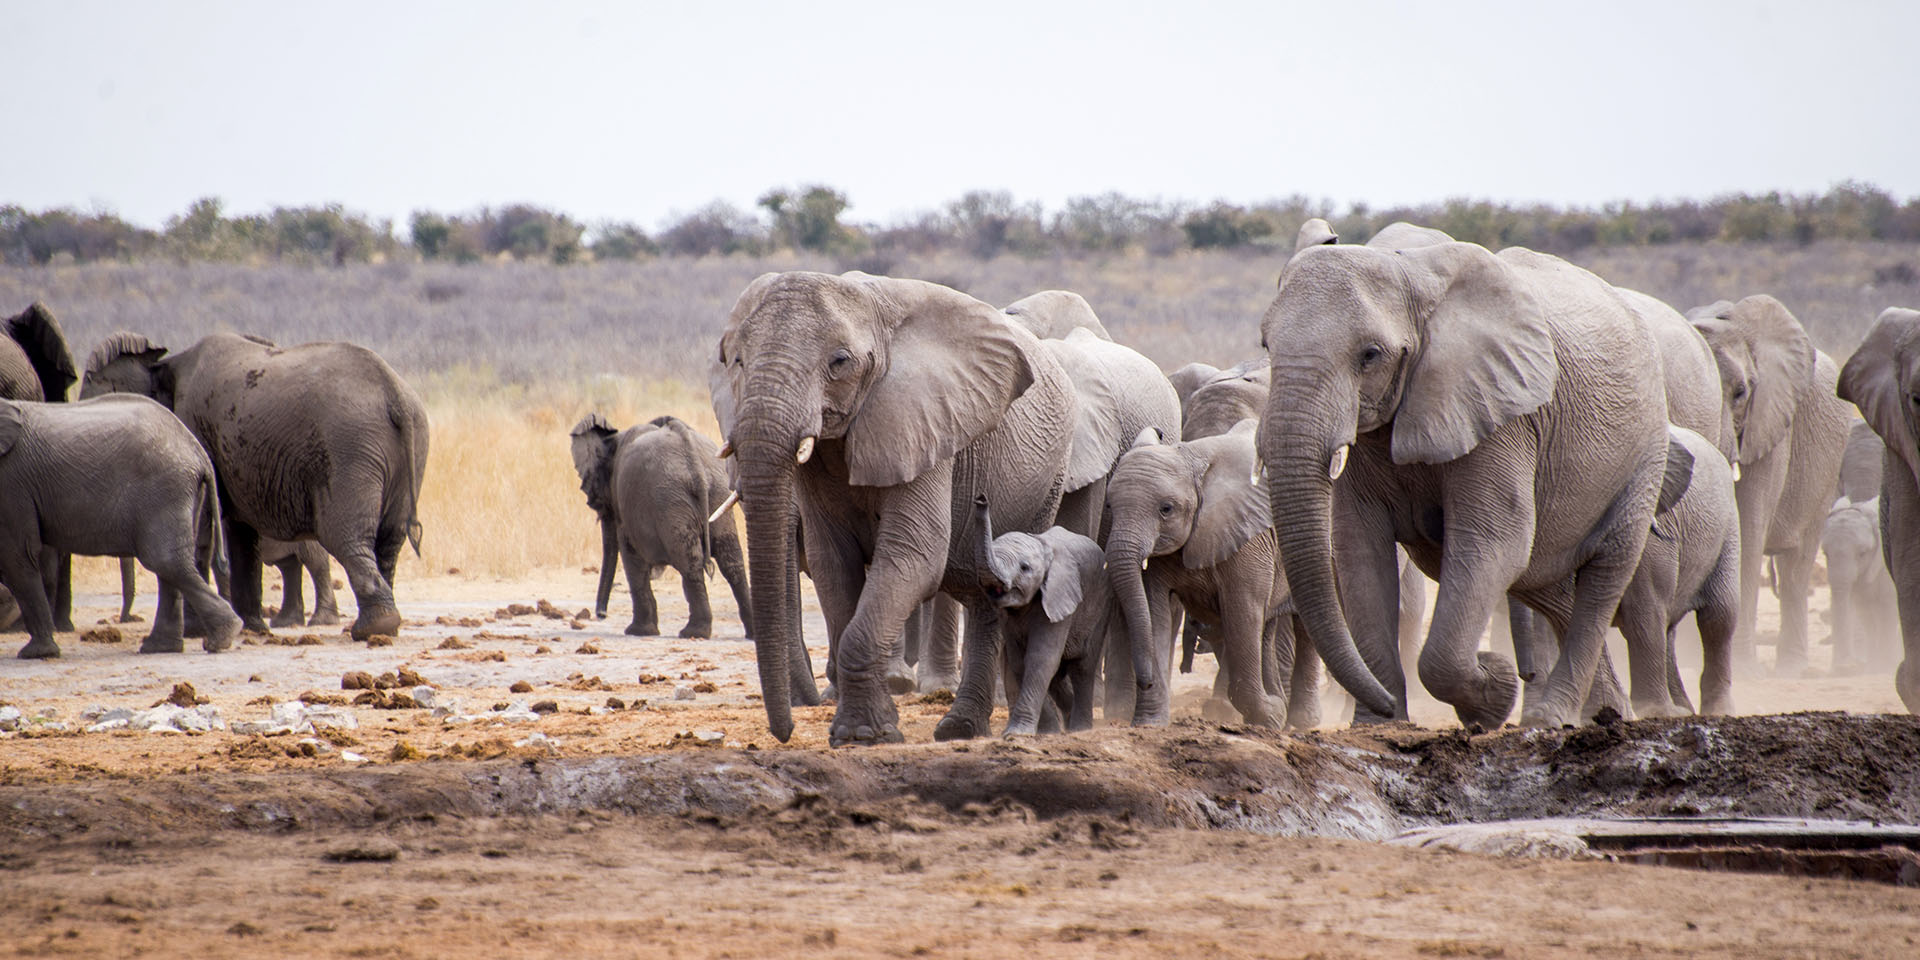 Elephants at waterhole, Etosha, Namibia